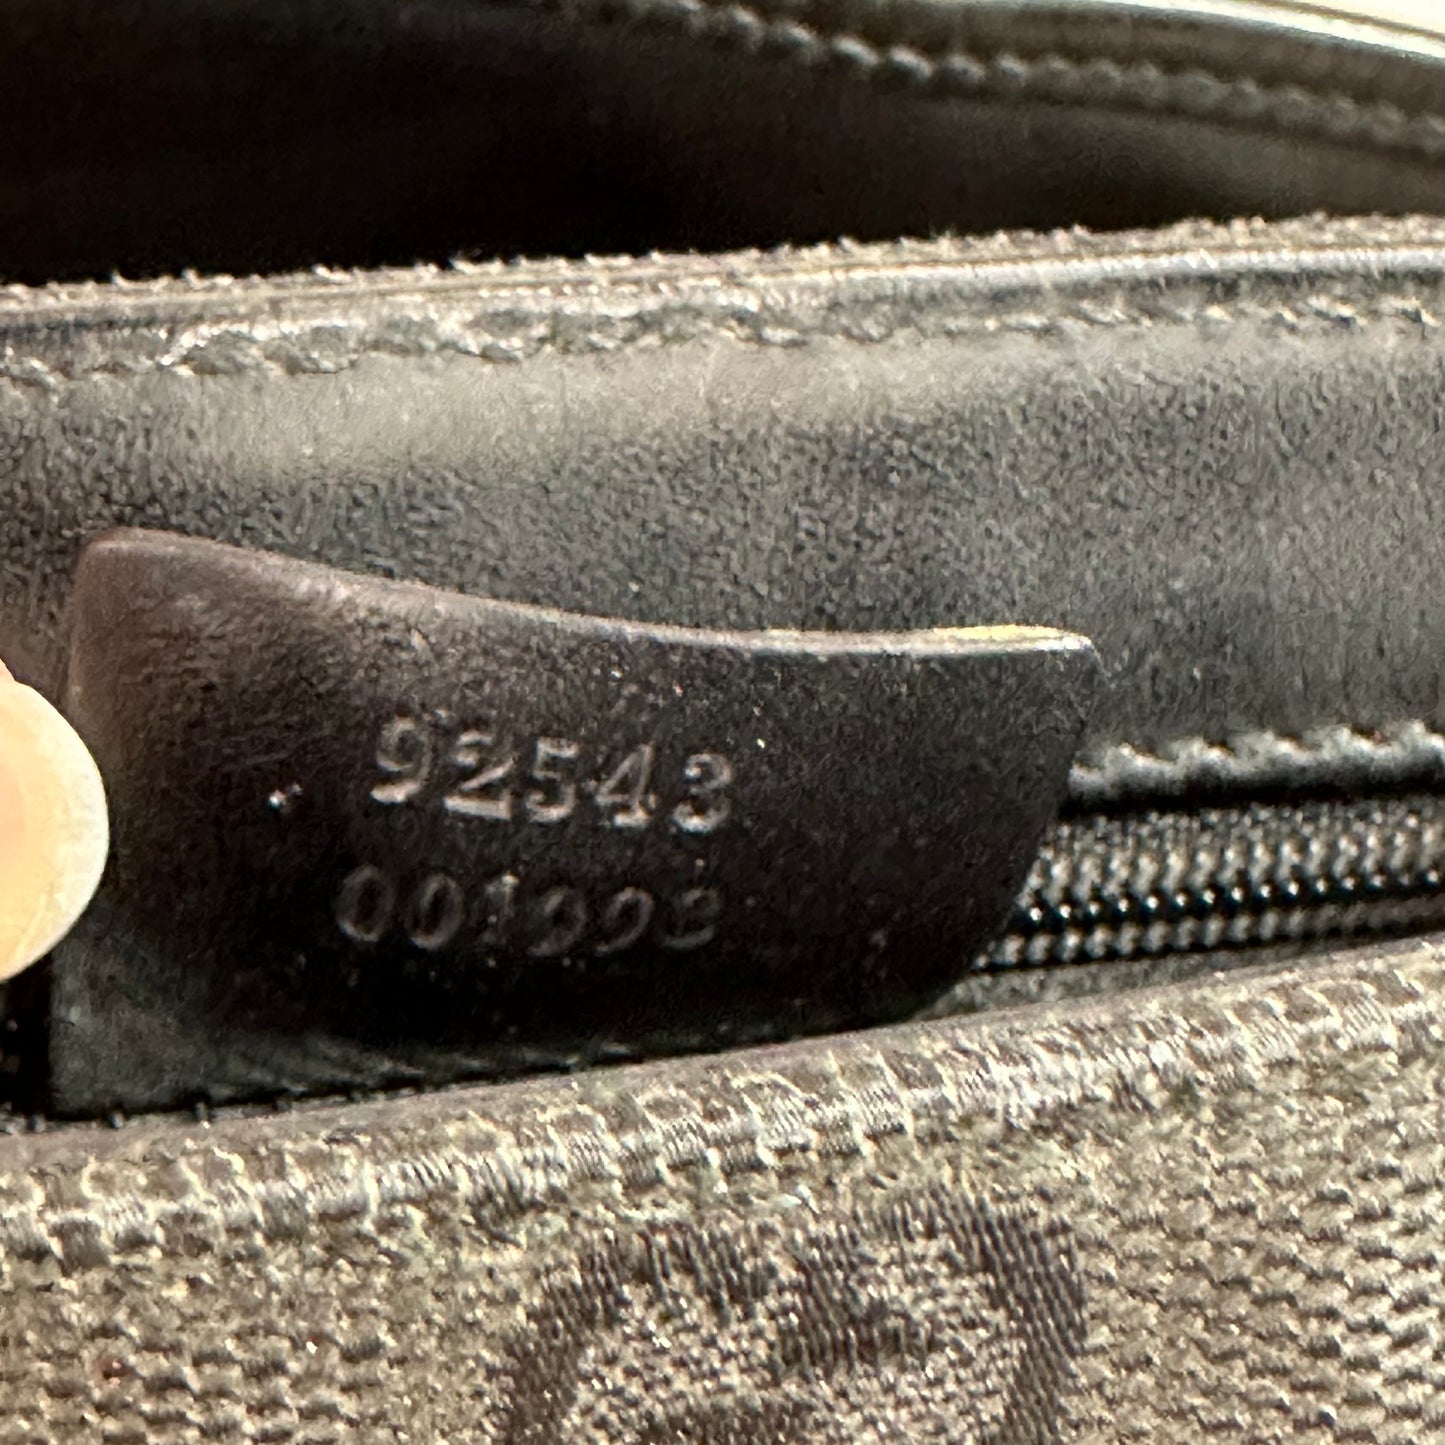 Vintage Gucci Black Monogram Belt Bag